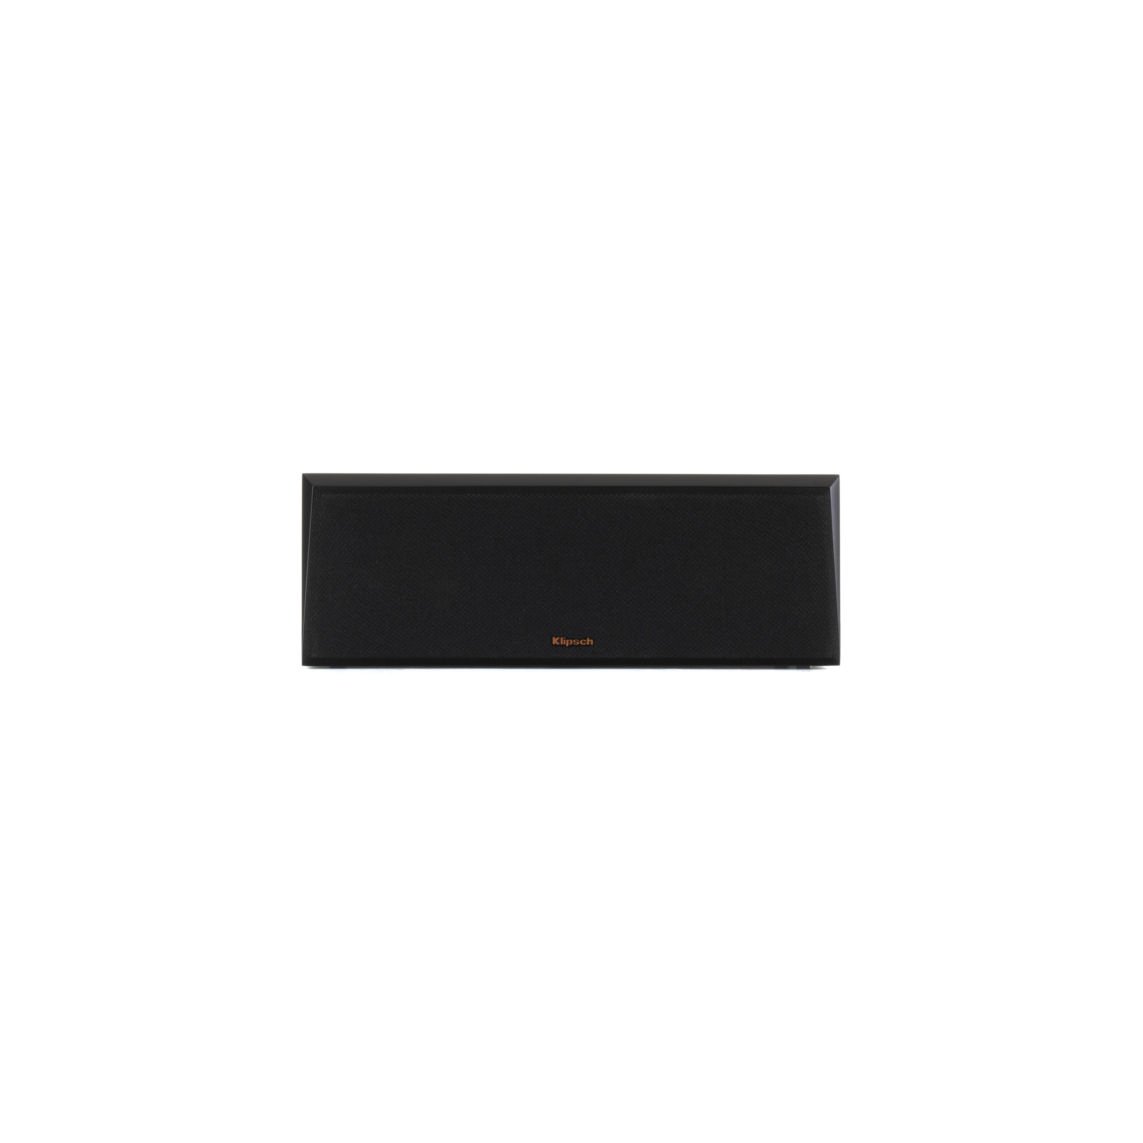 rp-400c_black-vinyl_front-grille